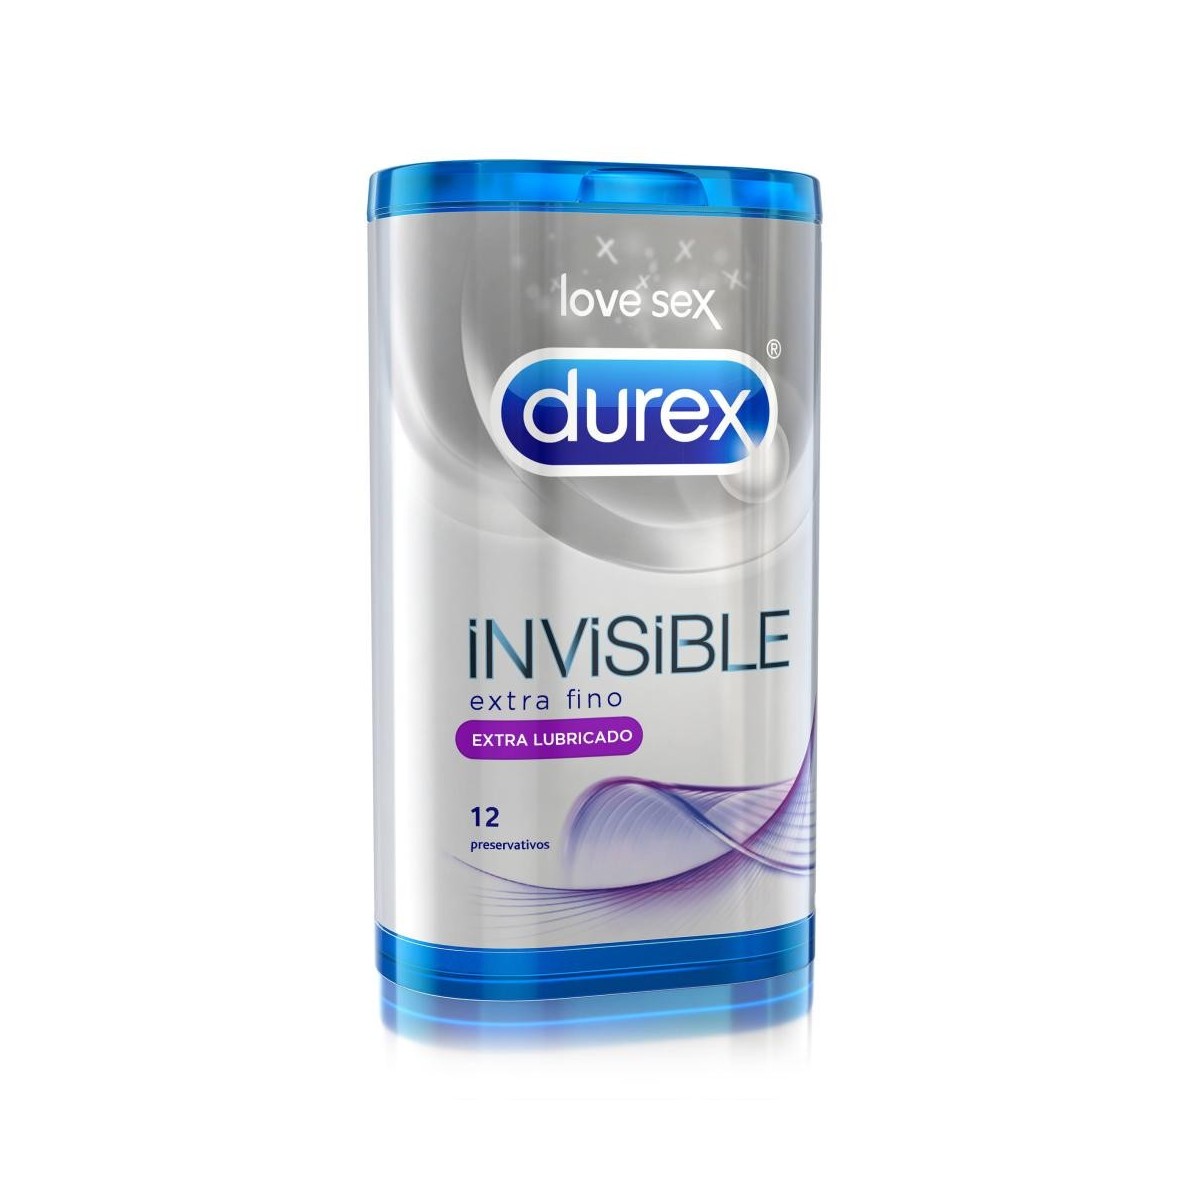 durex invisible extra lubricado 12 preservativos